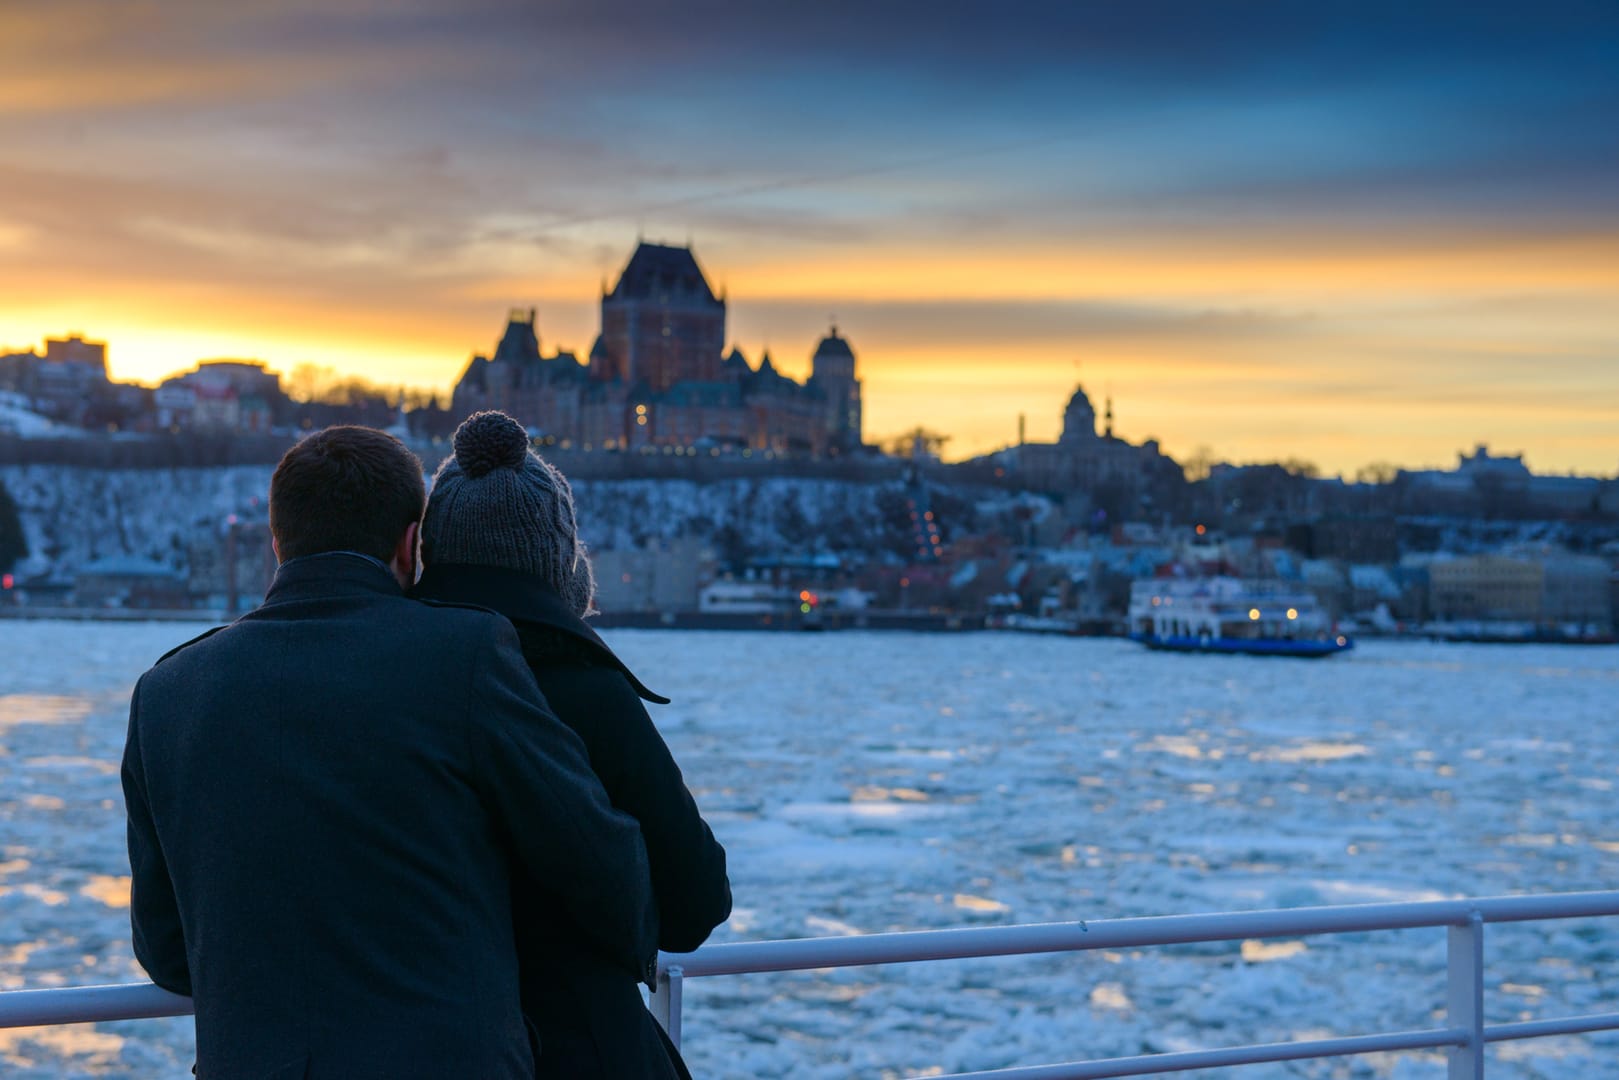 A romantic getaway in Québec City